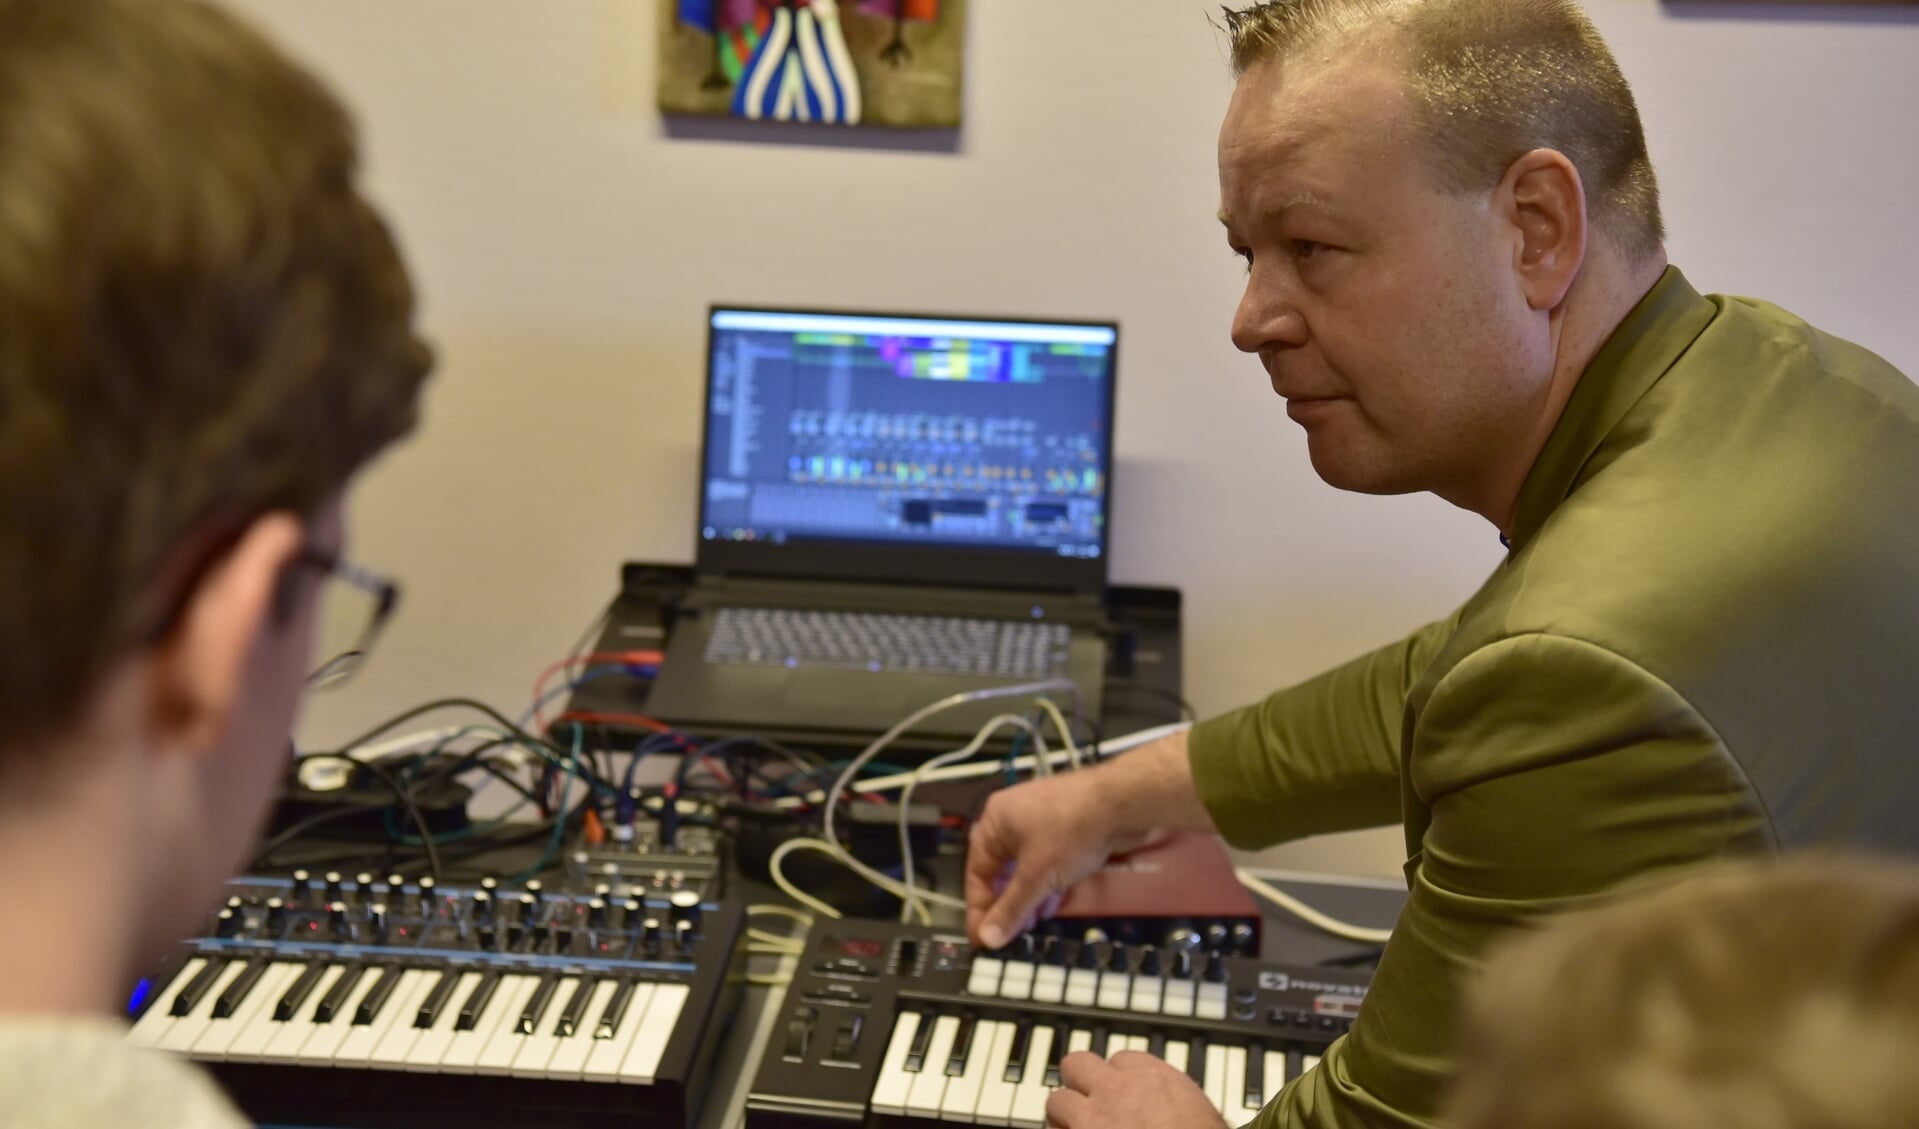 Digitaal muziek maken met Ableton Live is één van de korte cursussen die binnenkort van start gaan bij de muziekschool.